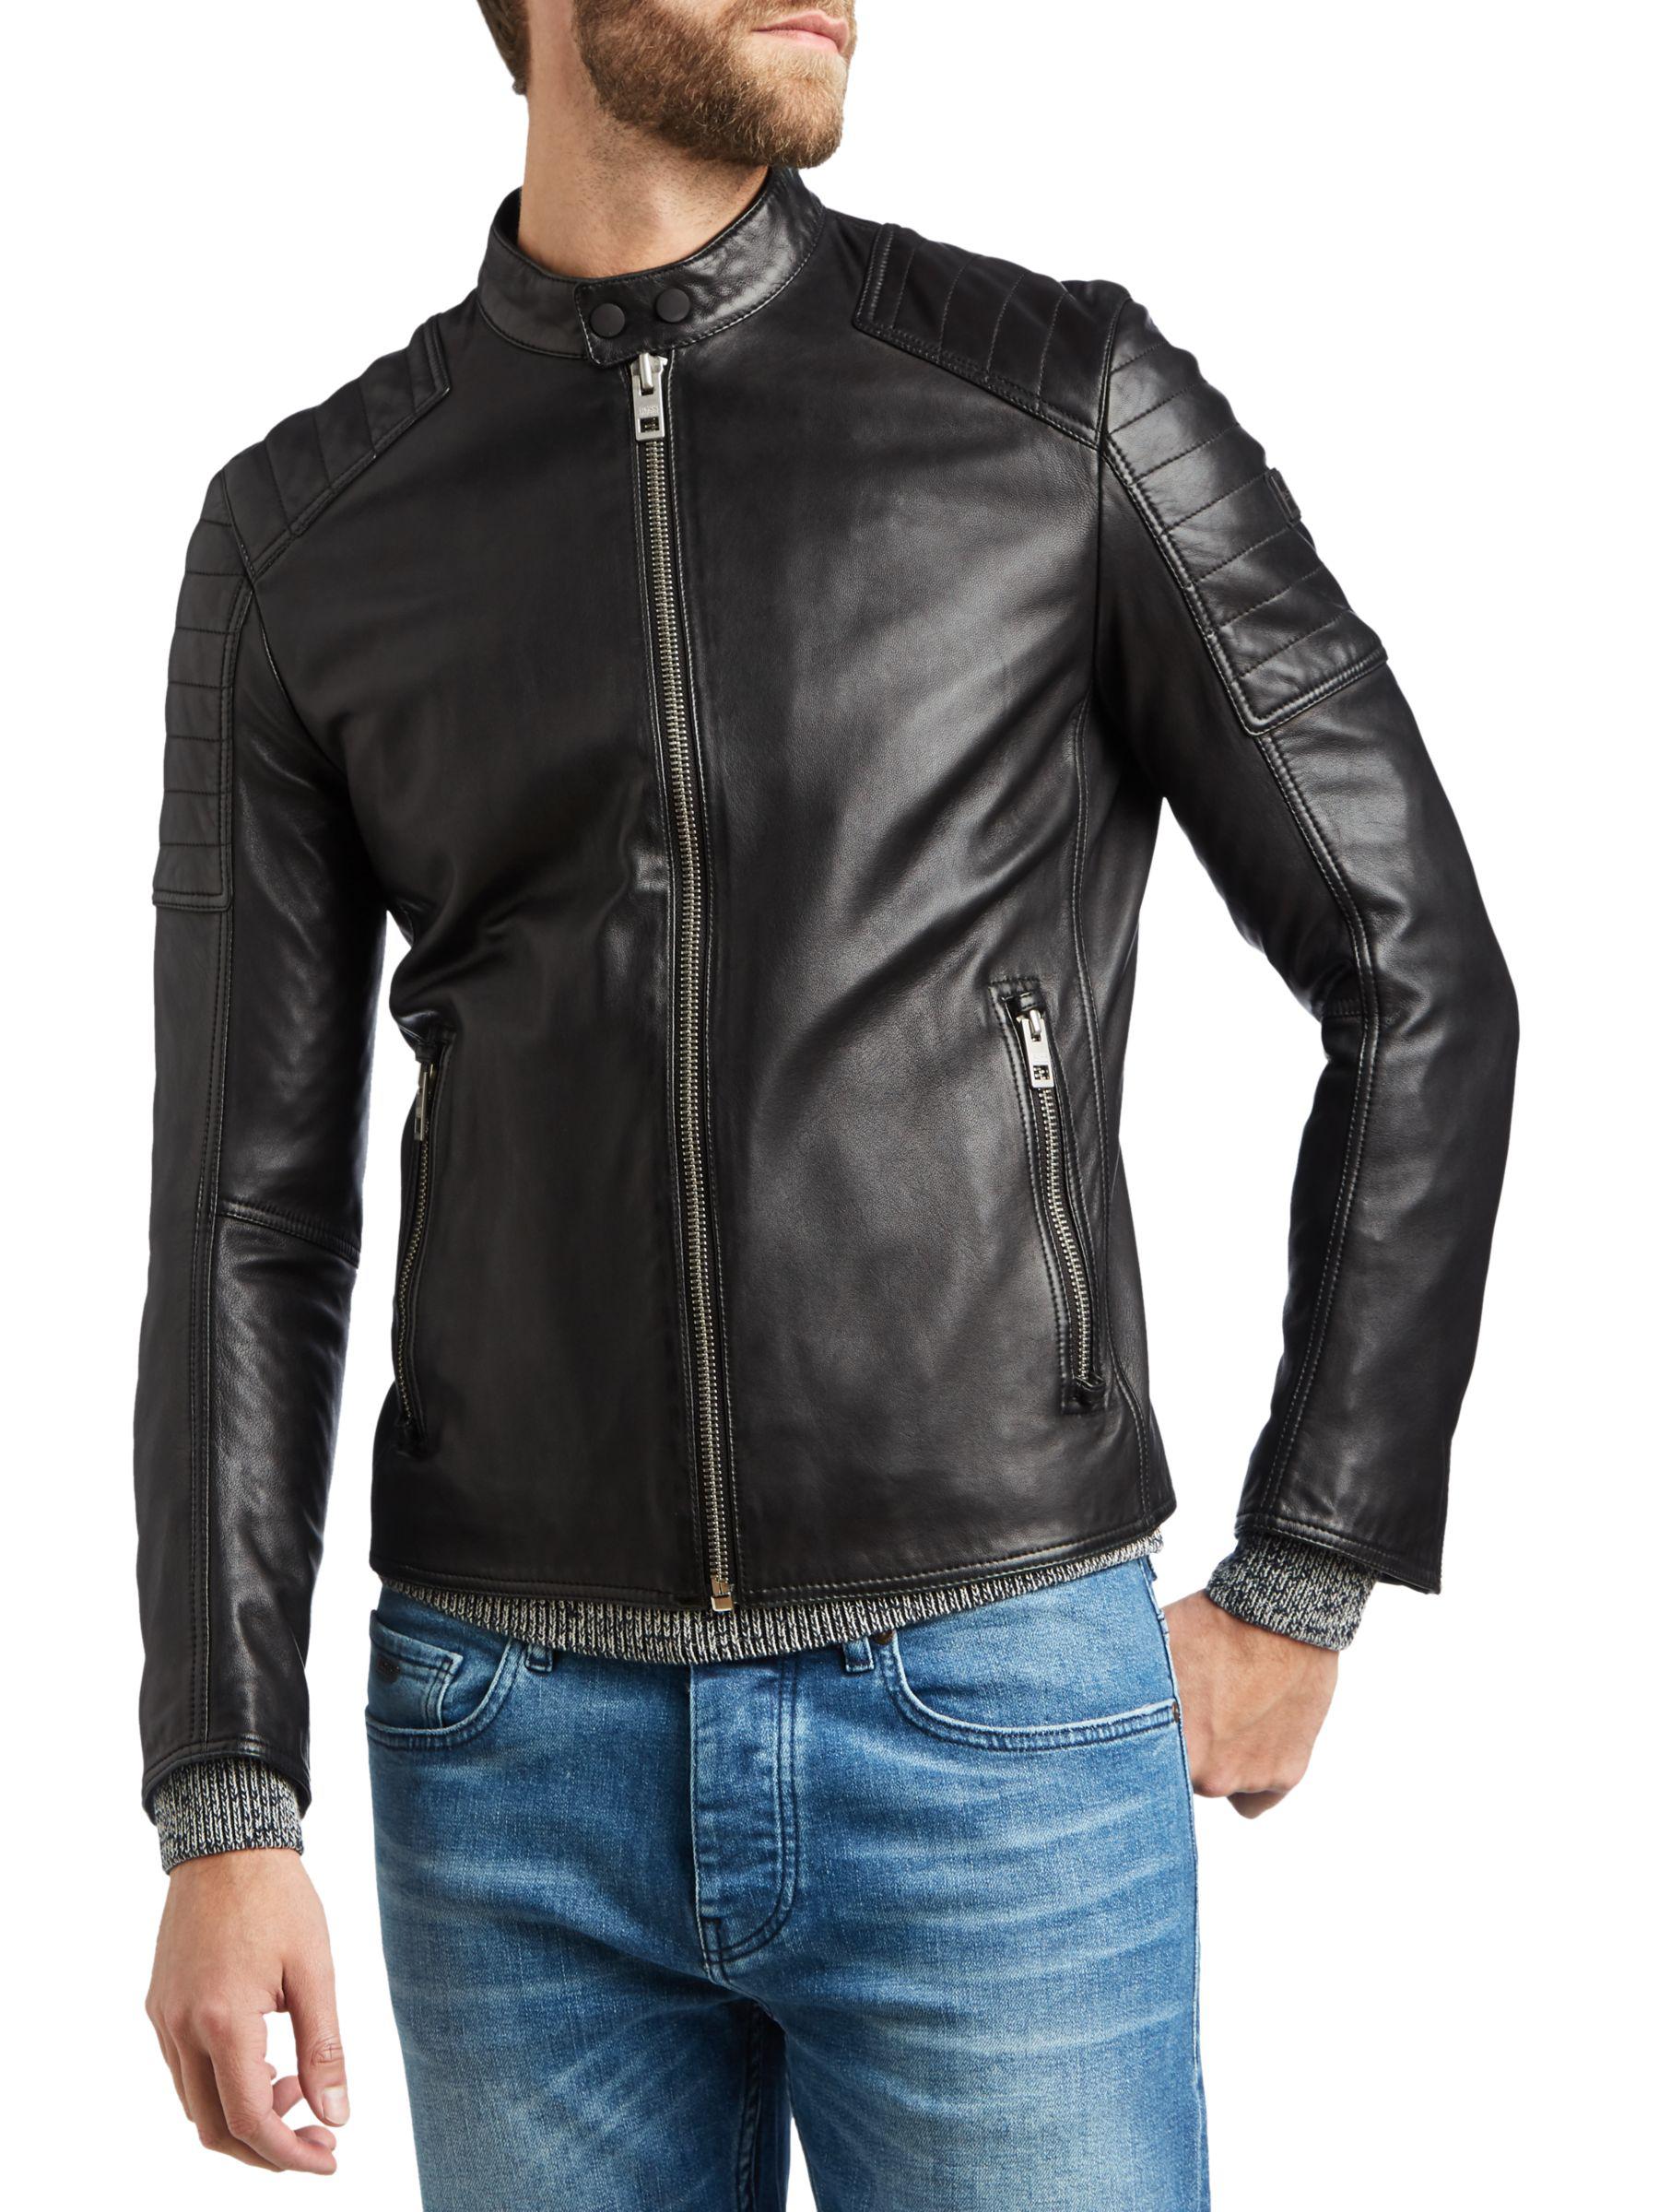 Shop \u003e hugo boss jackson leather jacket 